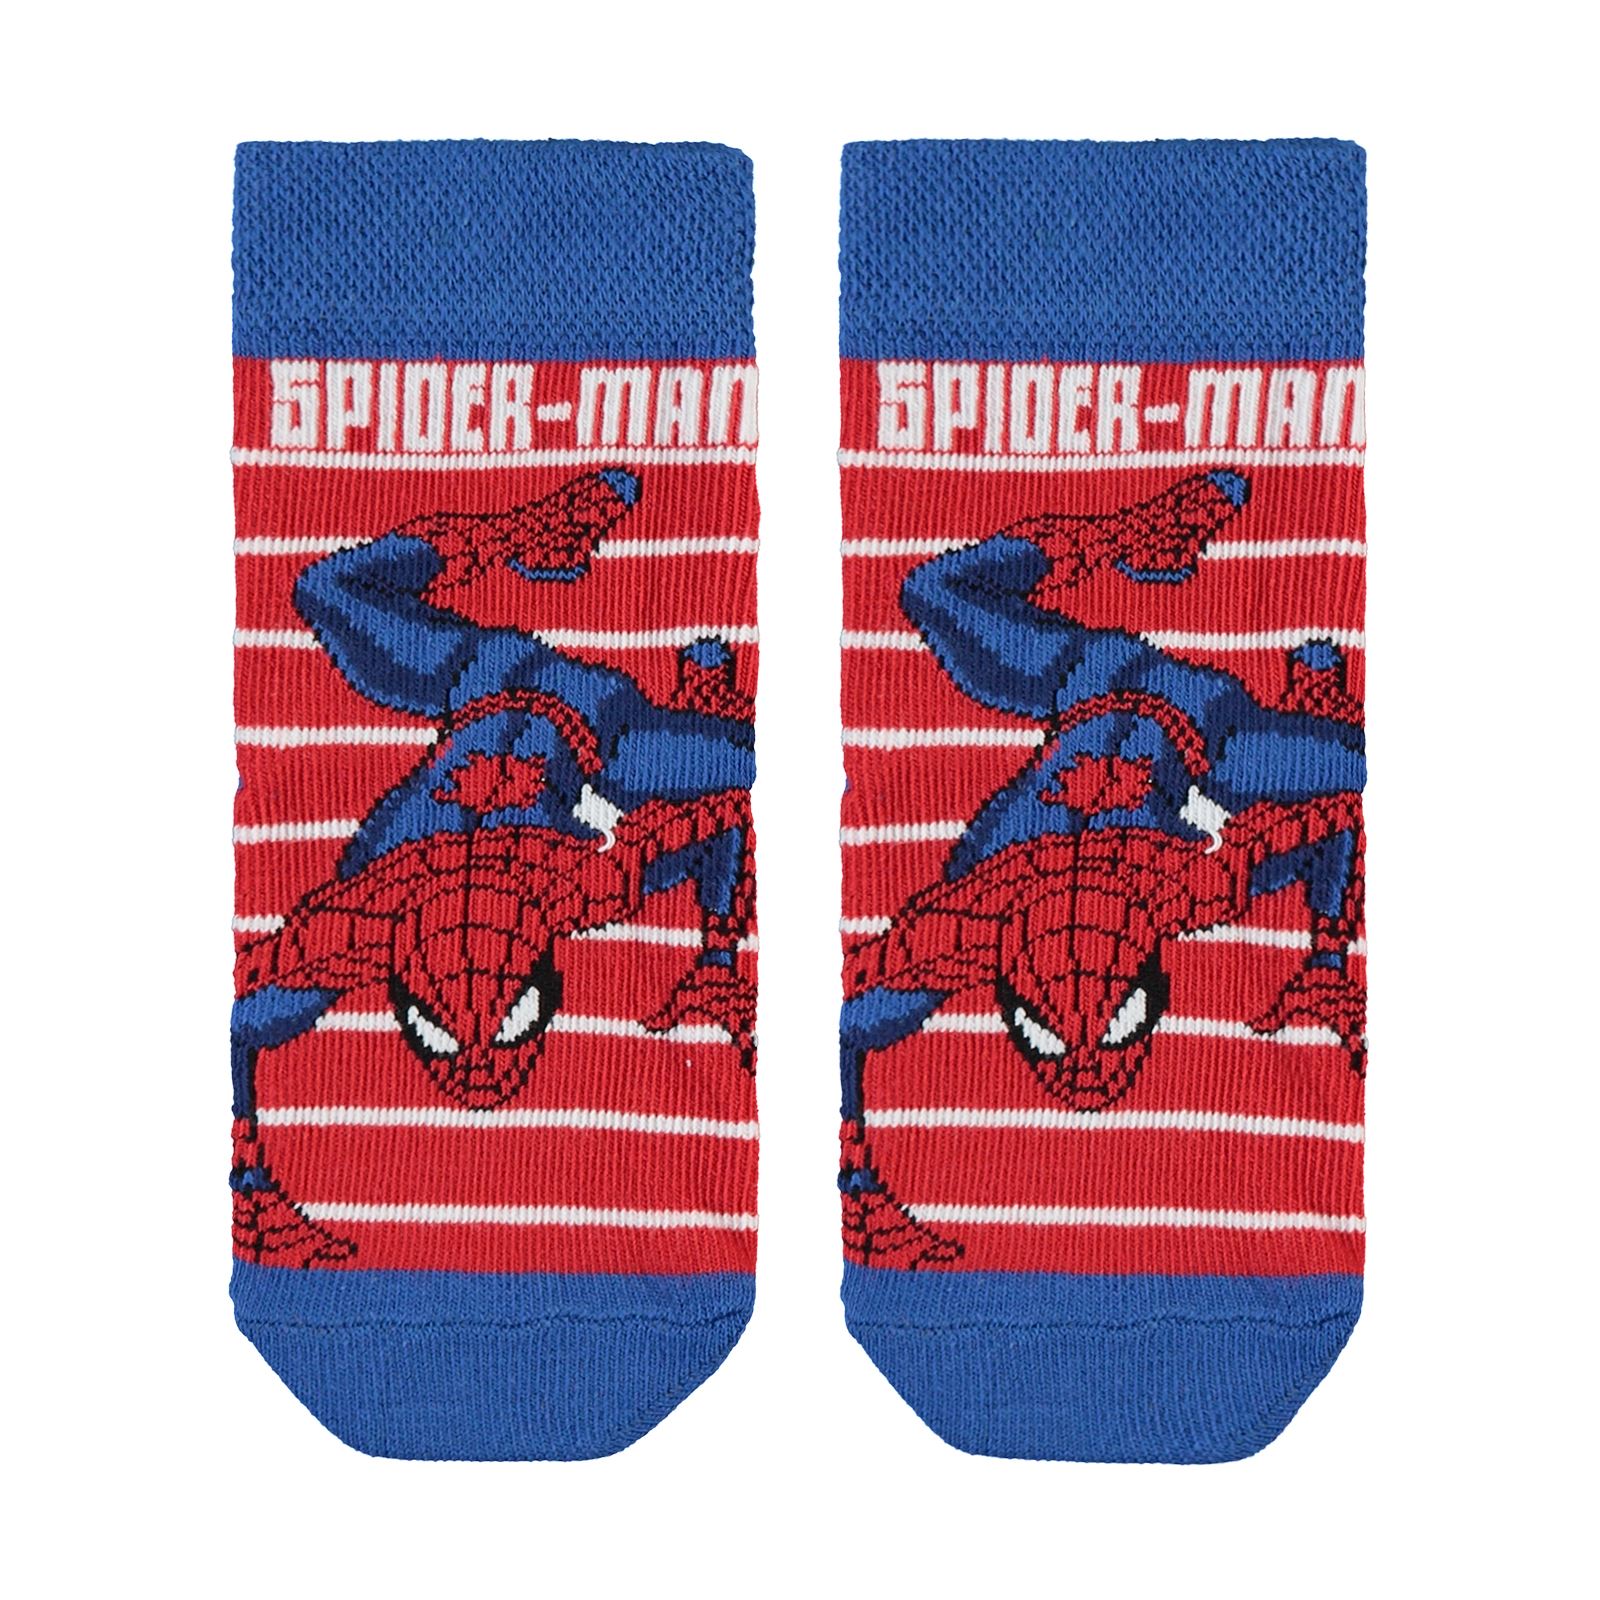 Spiderman Erkek Çocuk Çorap 3-11 Yaş Çorap Saks Mavisi